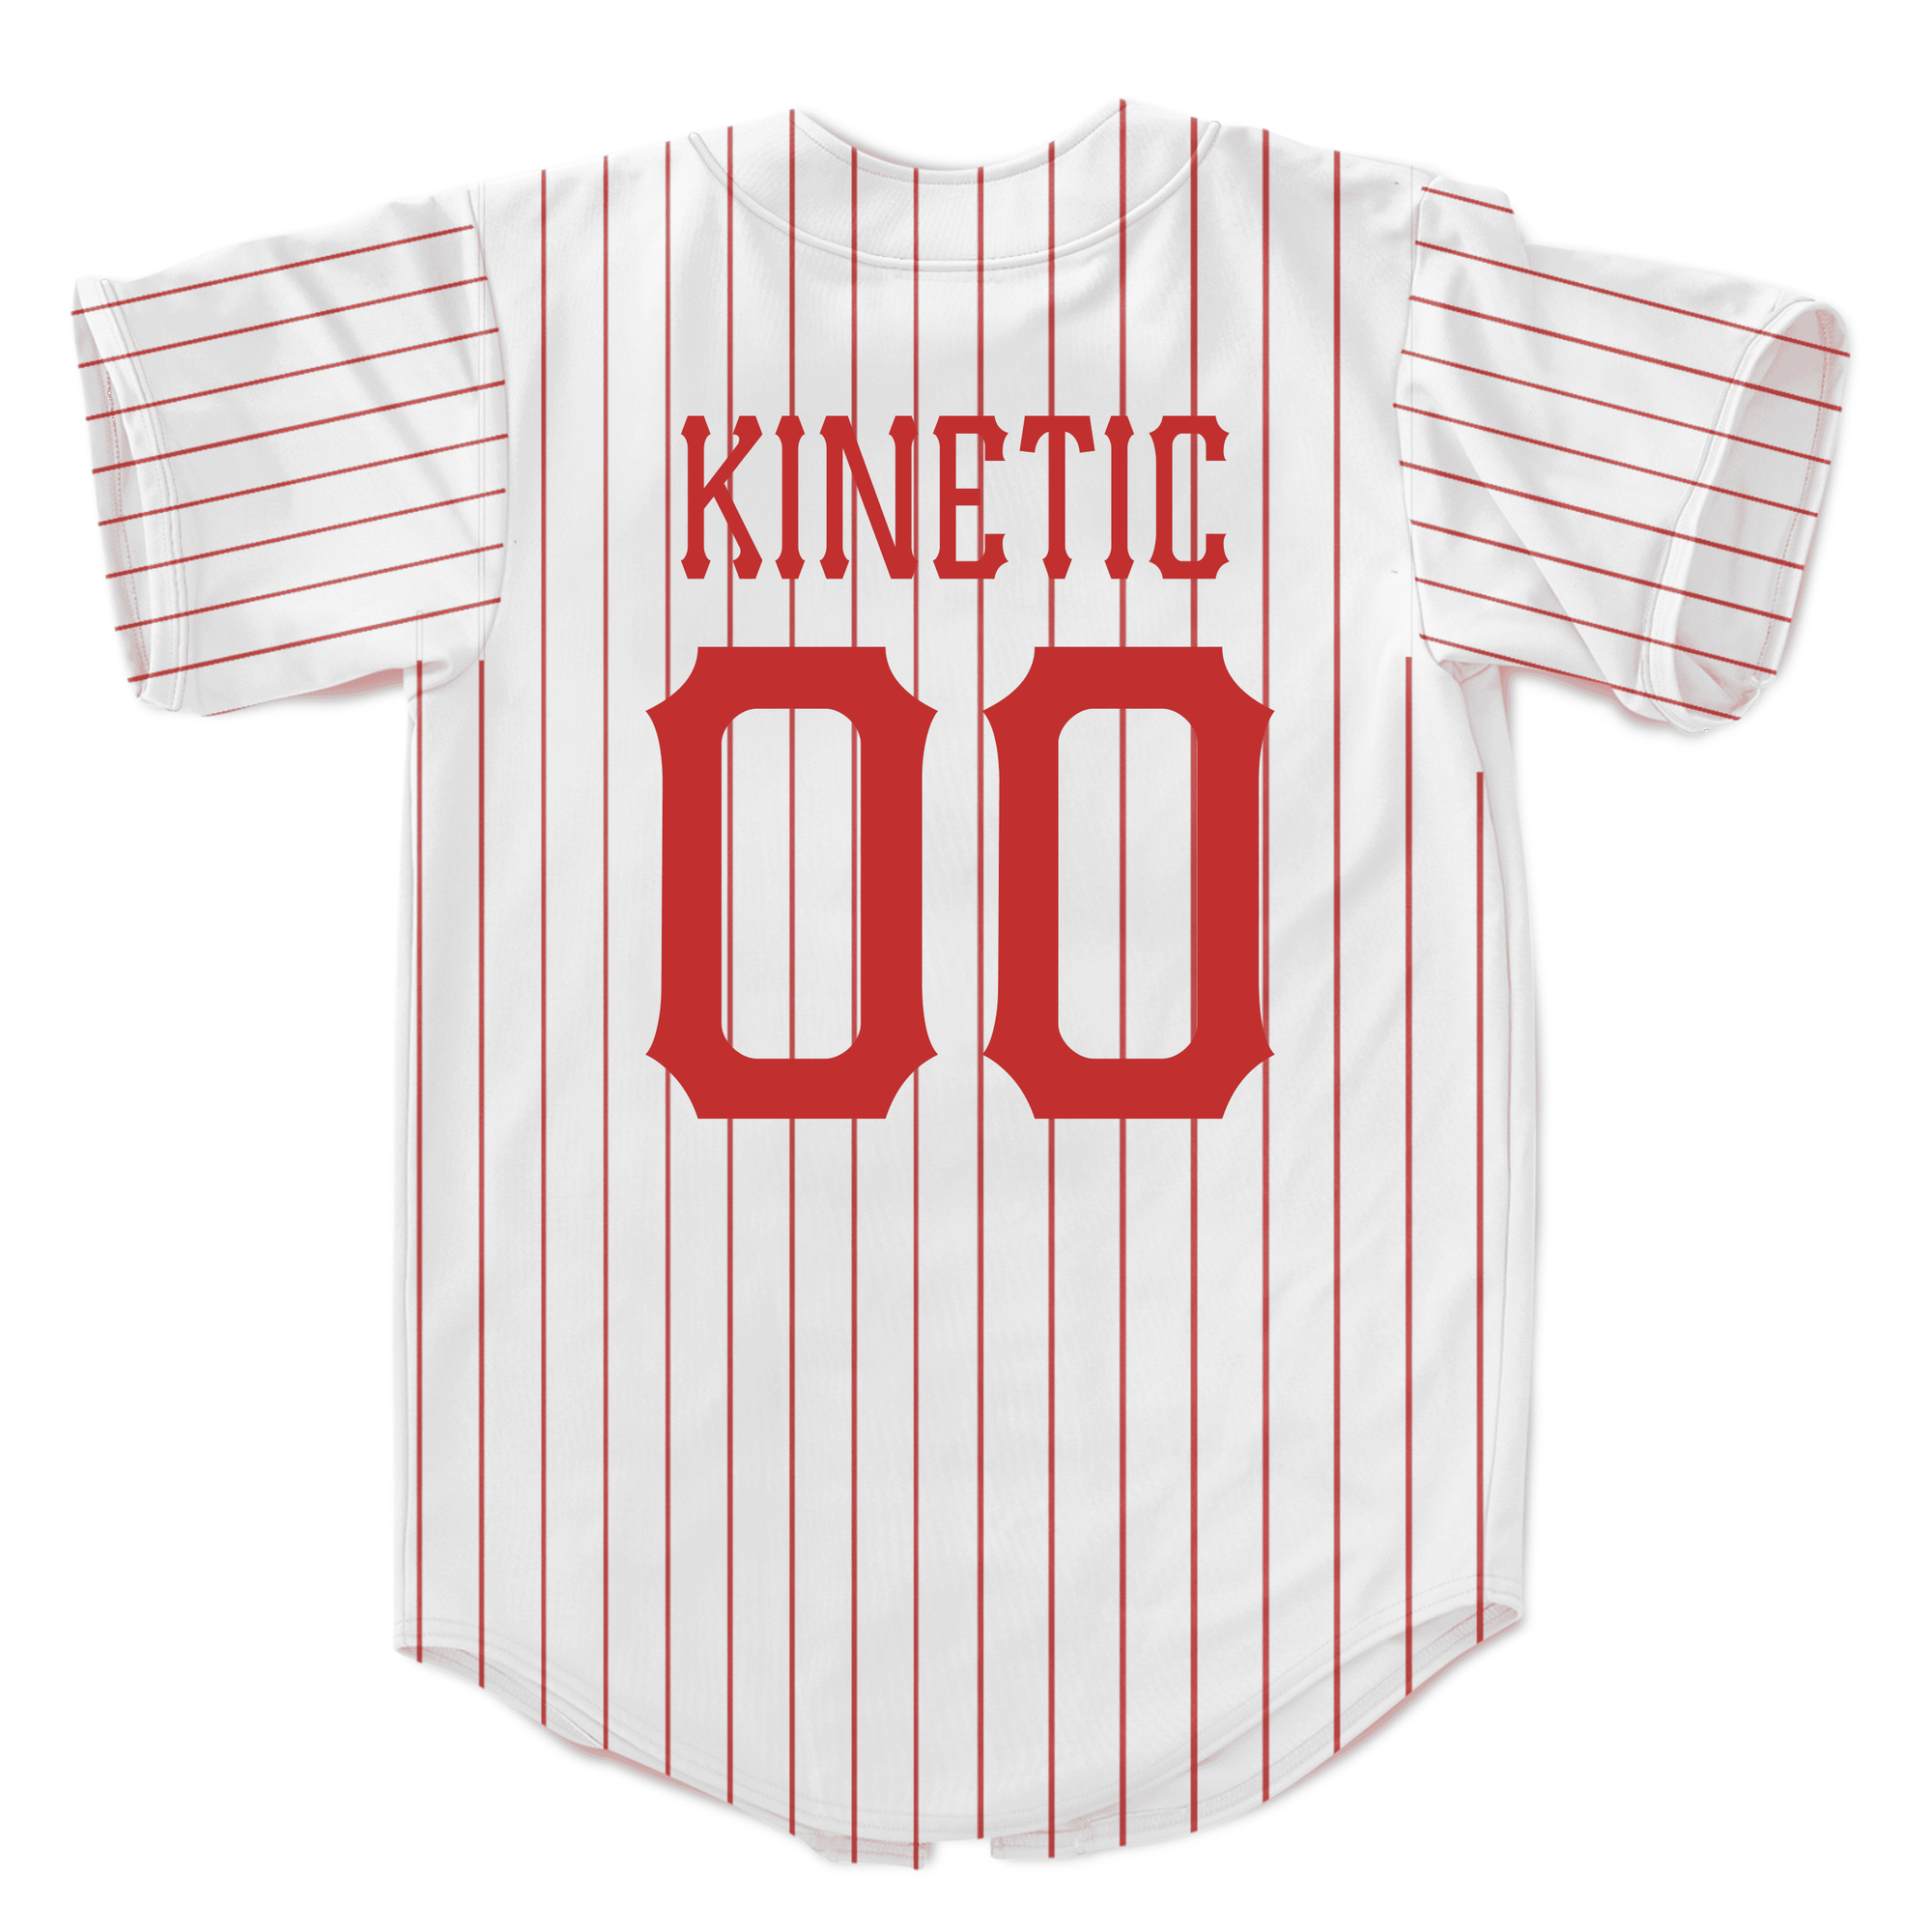 Phi Kappa Tau - Red Pinstripe Baseball Jersey